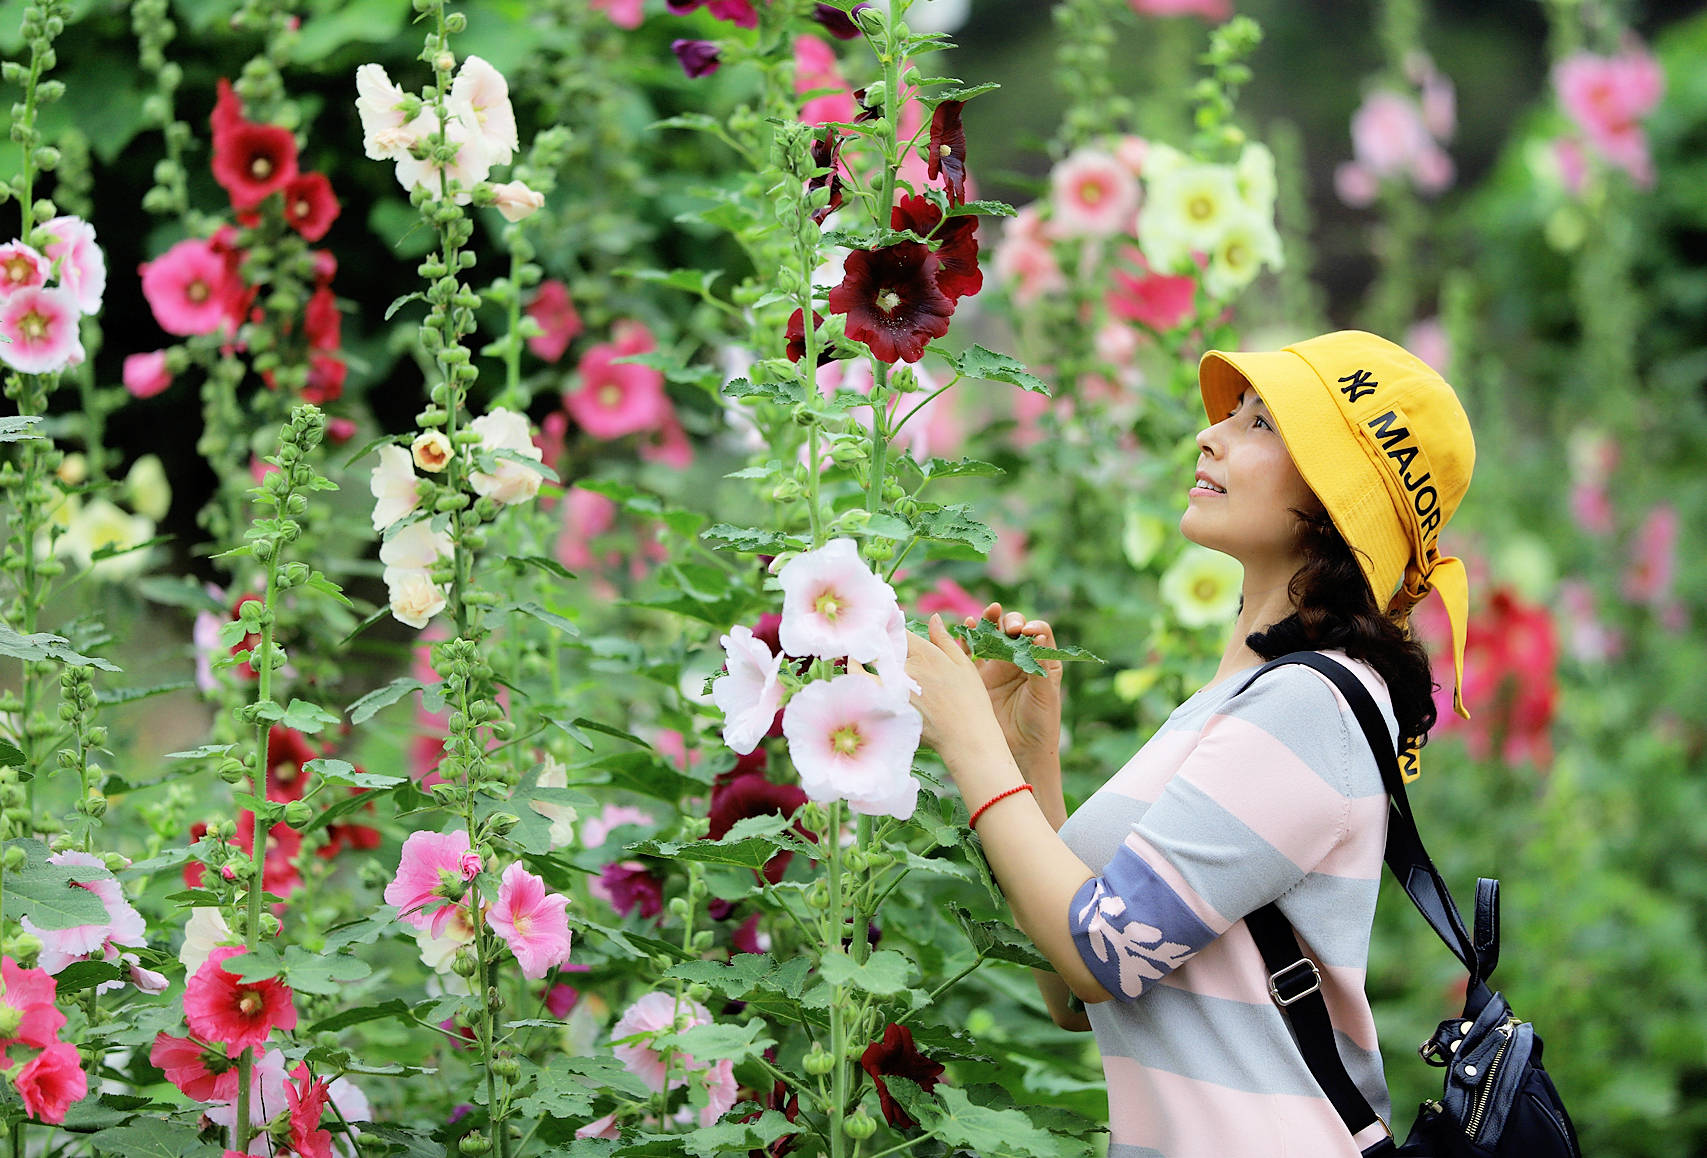 5月相约鲜花山谷看世界最美的蜀葵花海 花卉